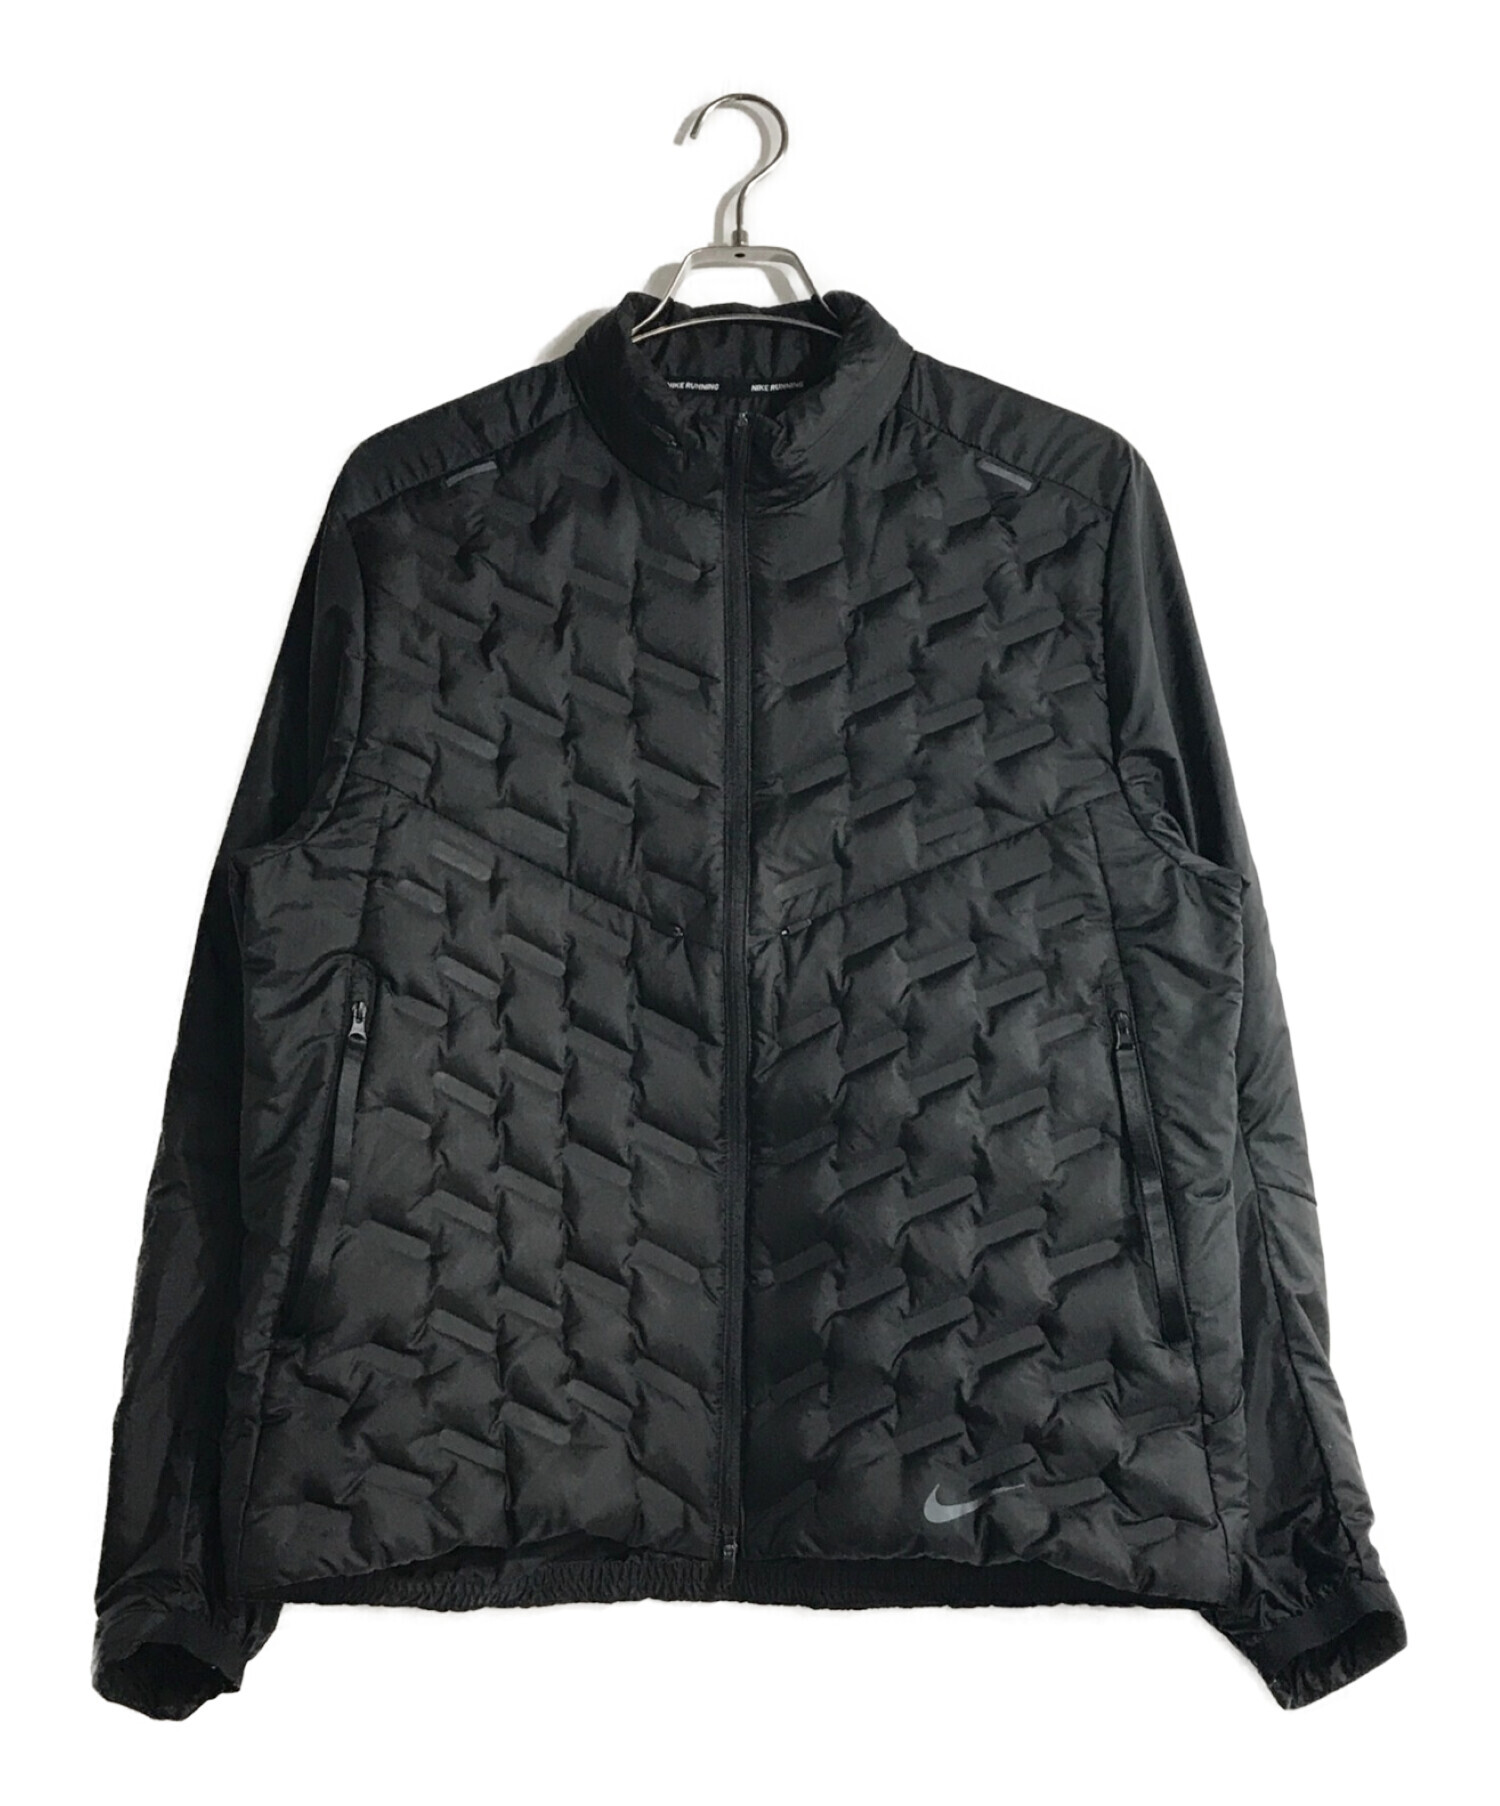 NIKE (ナイキ) ダウンフィル ランニングジャケット ブラック サイズ:XL